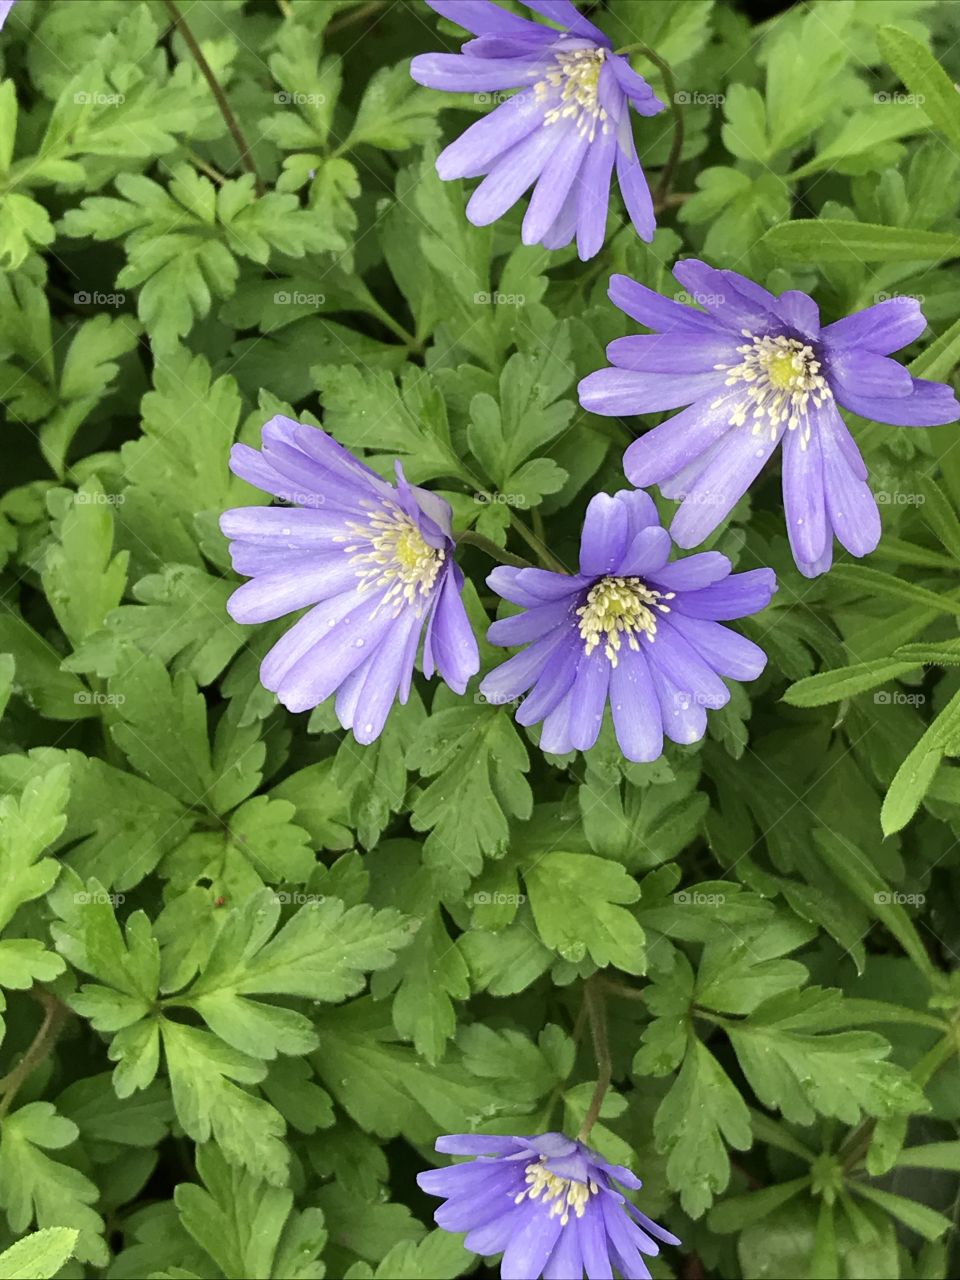 Purple daisy like flower